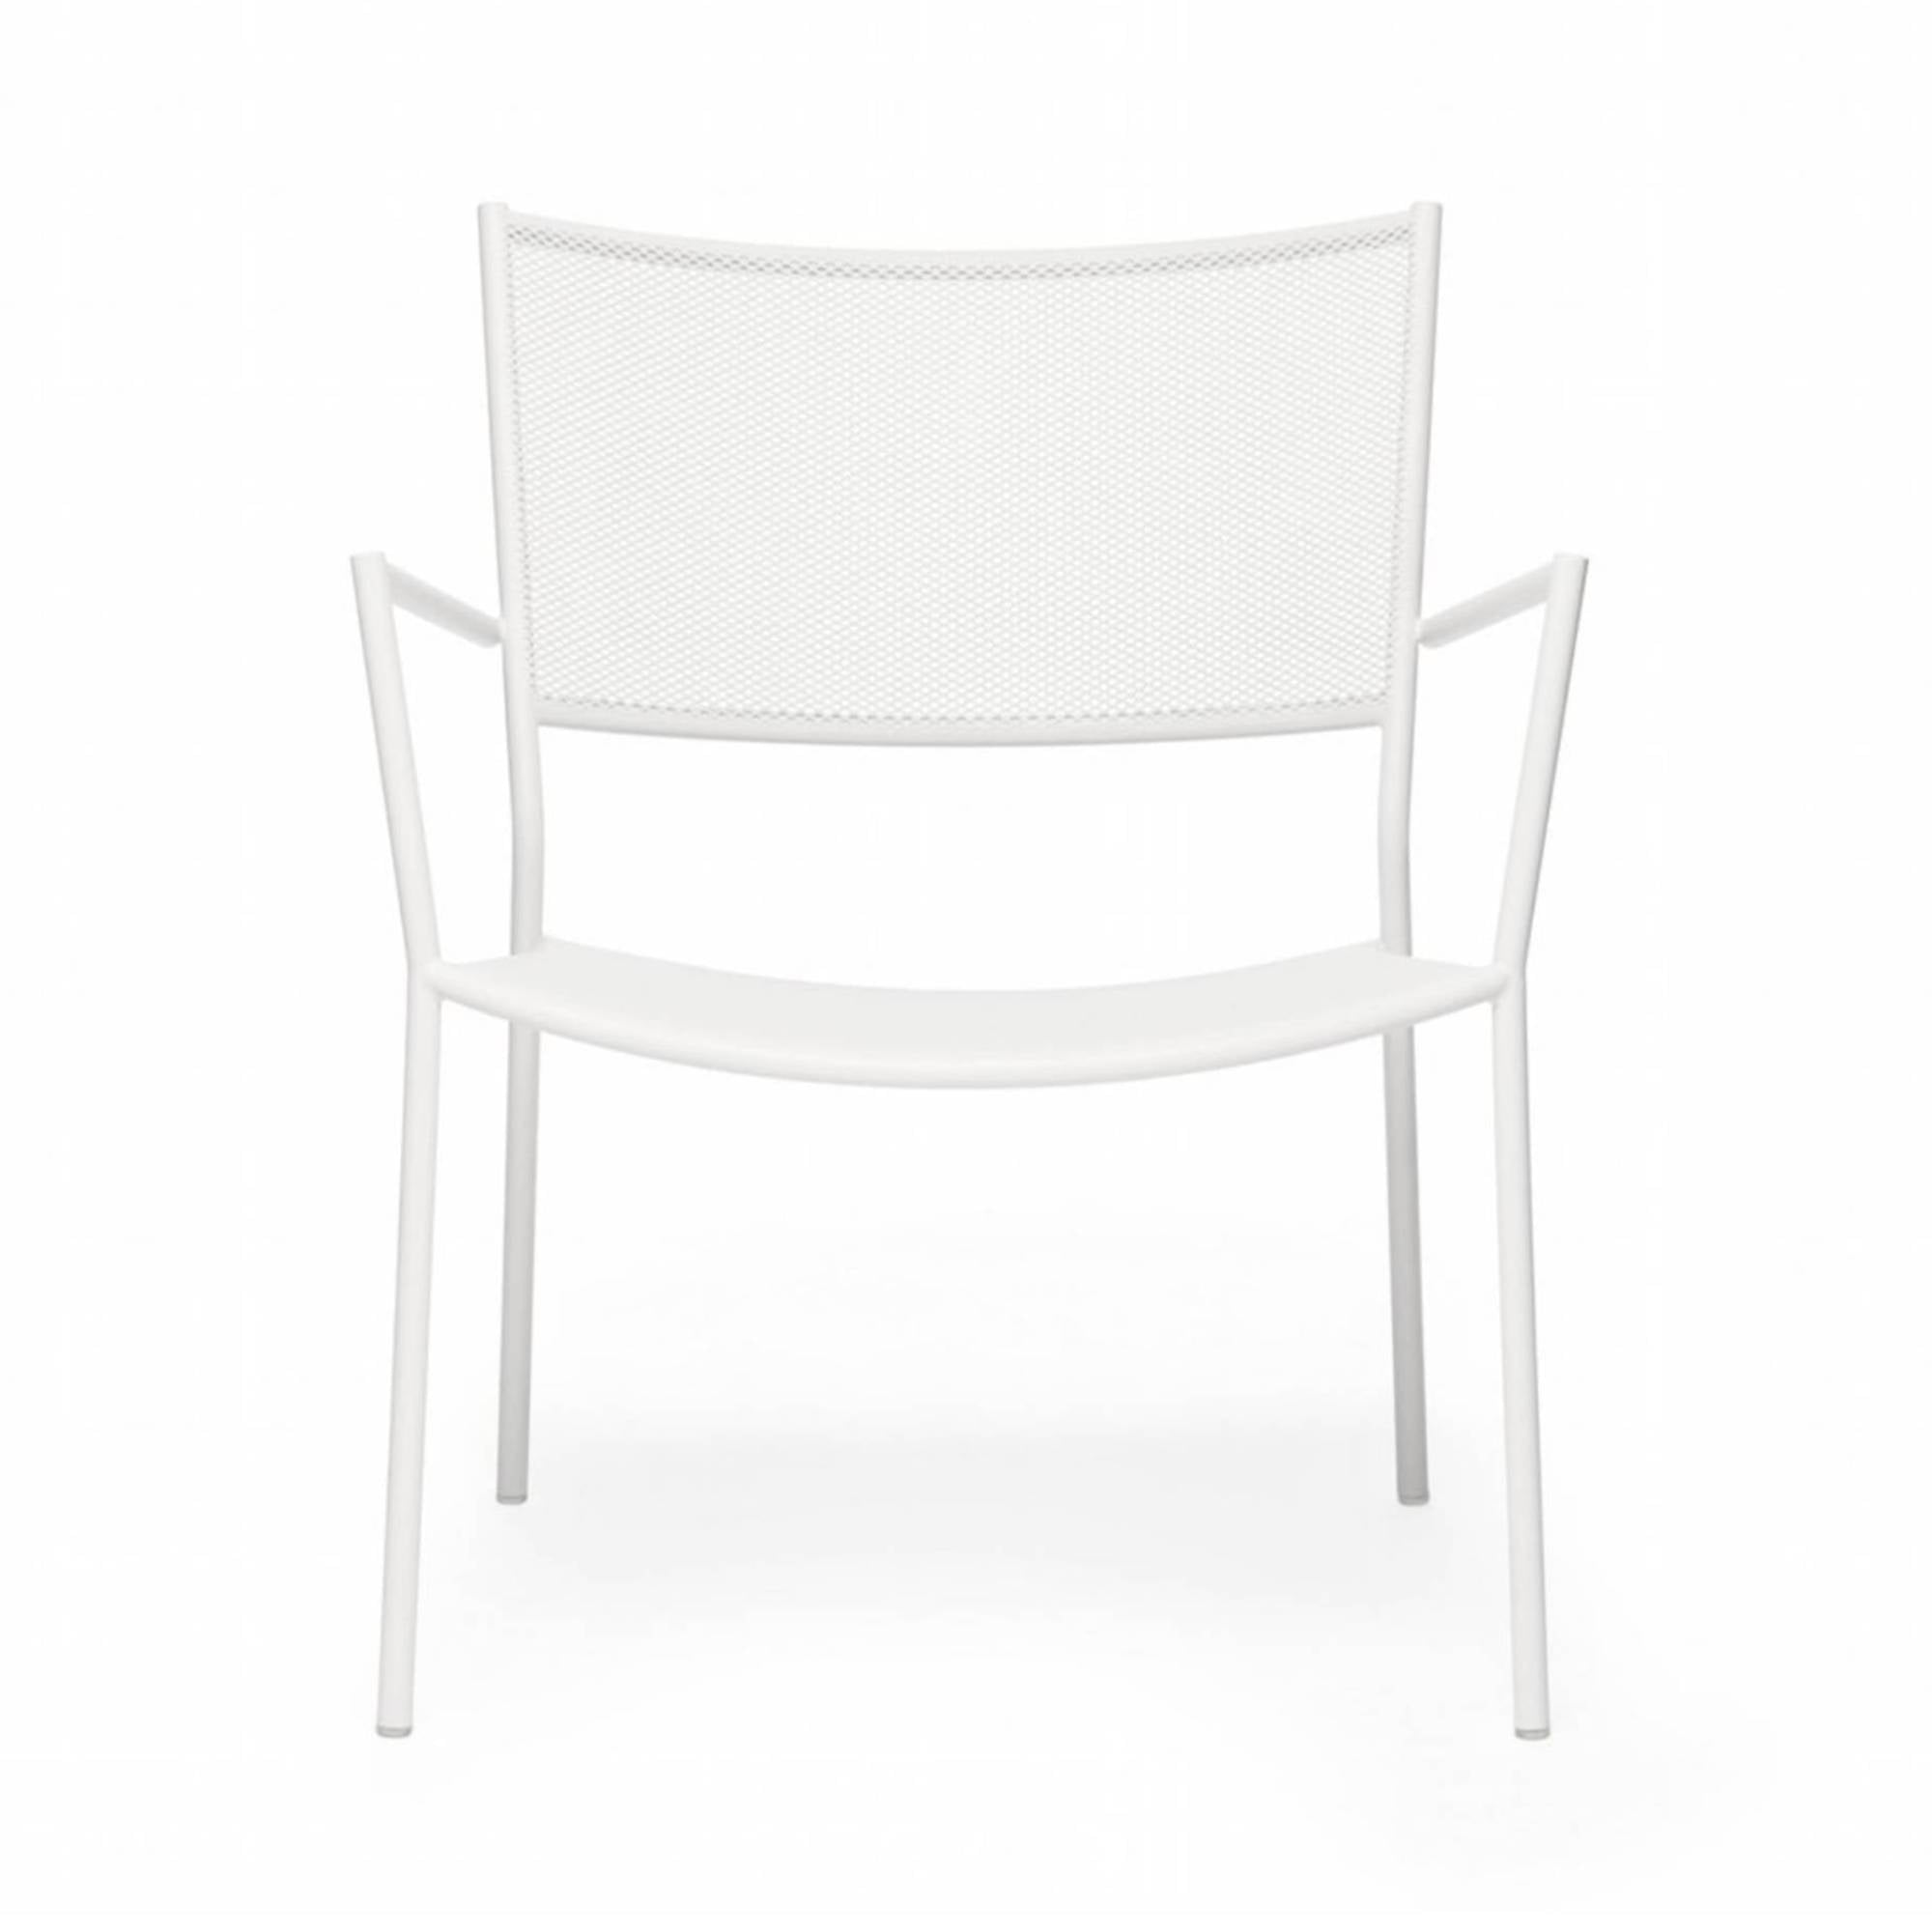 Jig Mesh Easy Chair: White